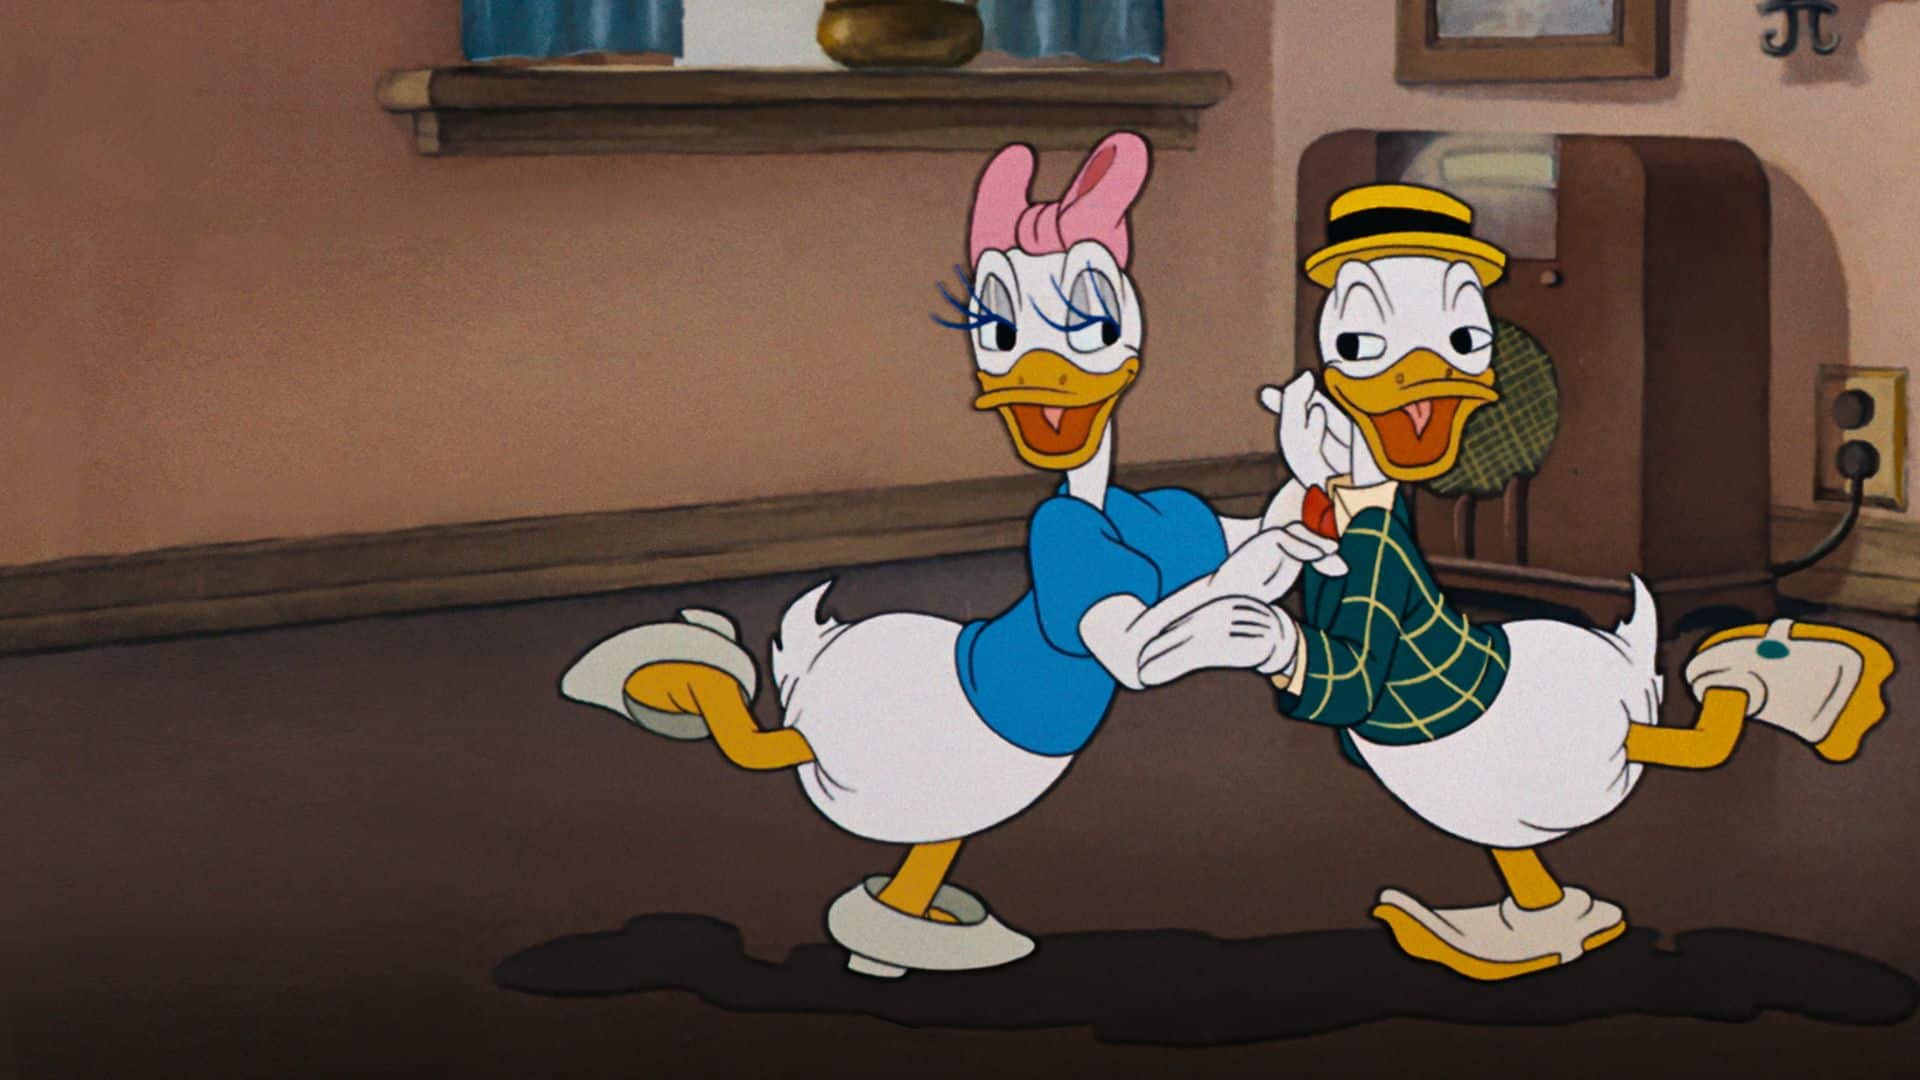 Donald and Daisy.